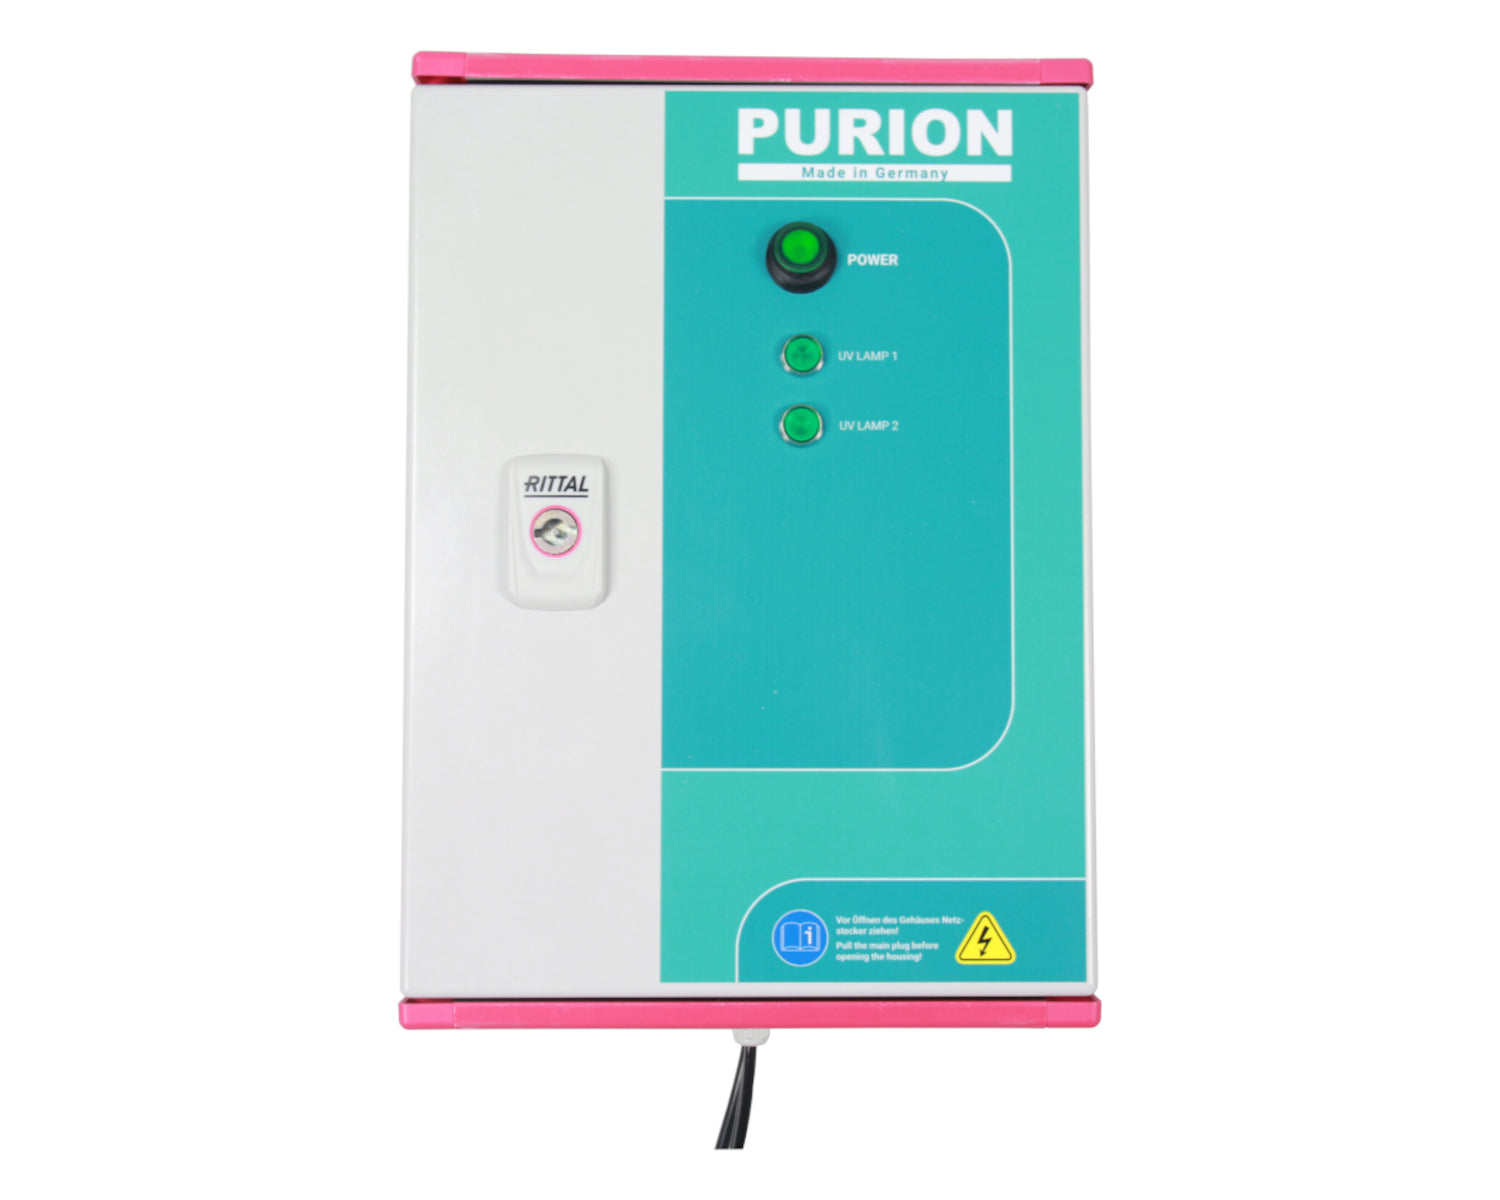 Die Hotels und Mehrfamilienhäuser haben nun die Möglichkeit, die sehr große UV-C-Desinfektionsanlage PURION 2500 90 W DUAL Basic der PURION GmbH zur effektiven Desinfektion einzusetzen.